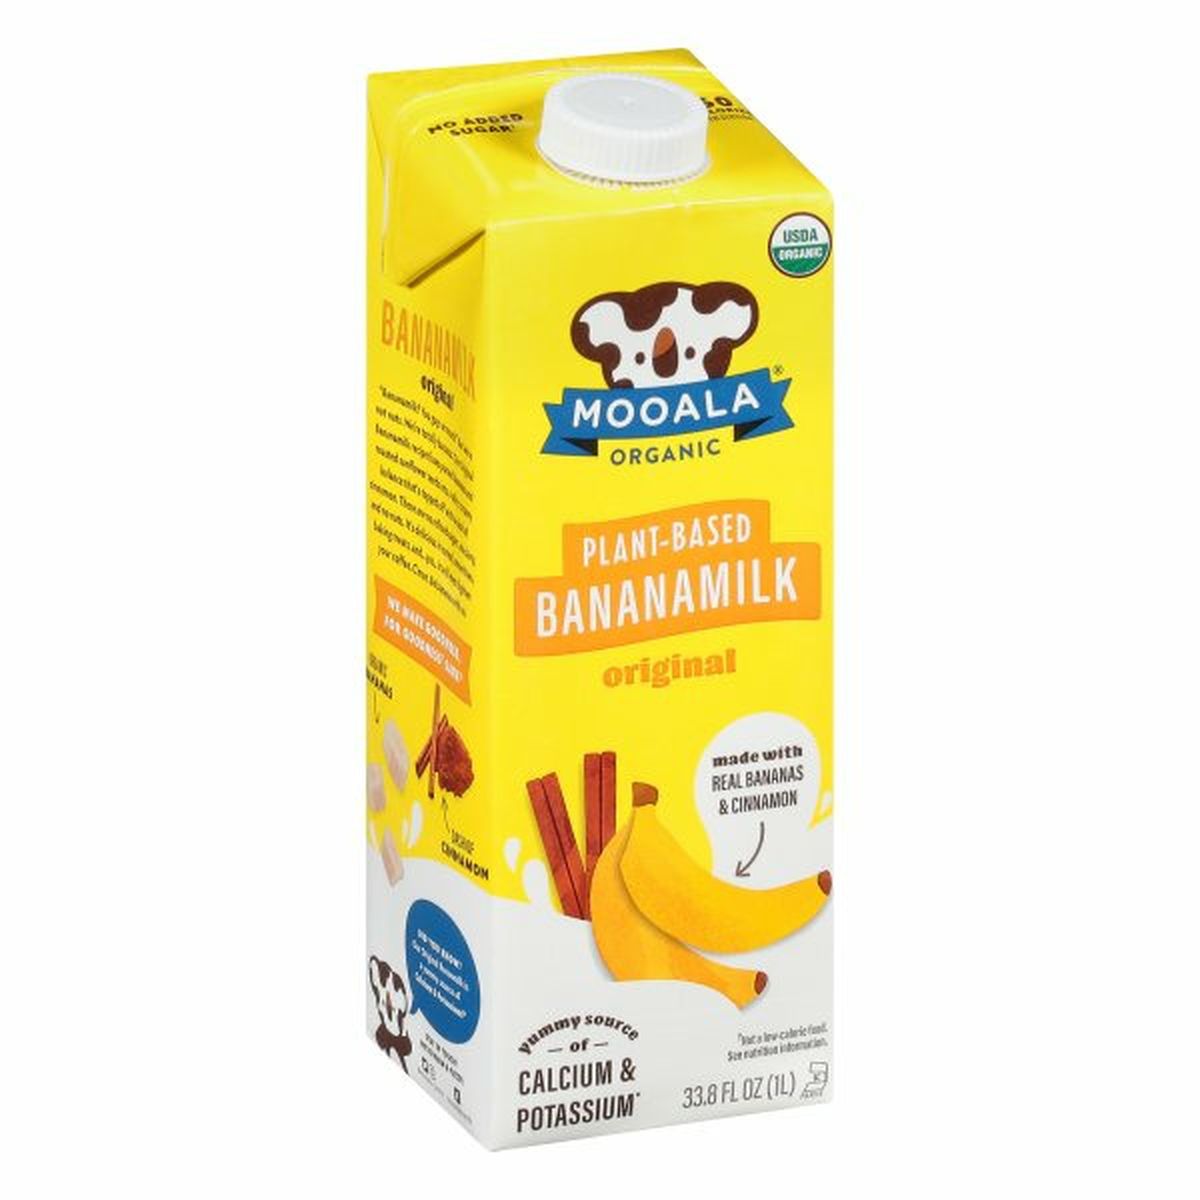 Calories in Mooala Bananamilk, Plant-Based, Original